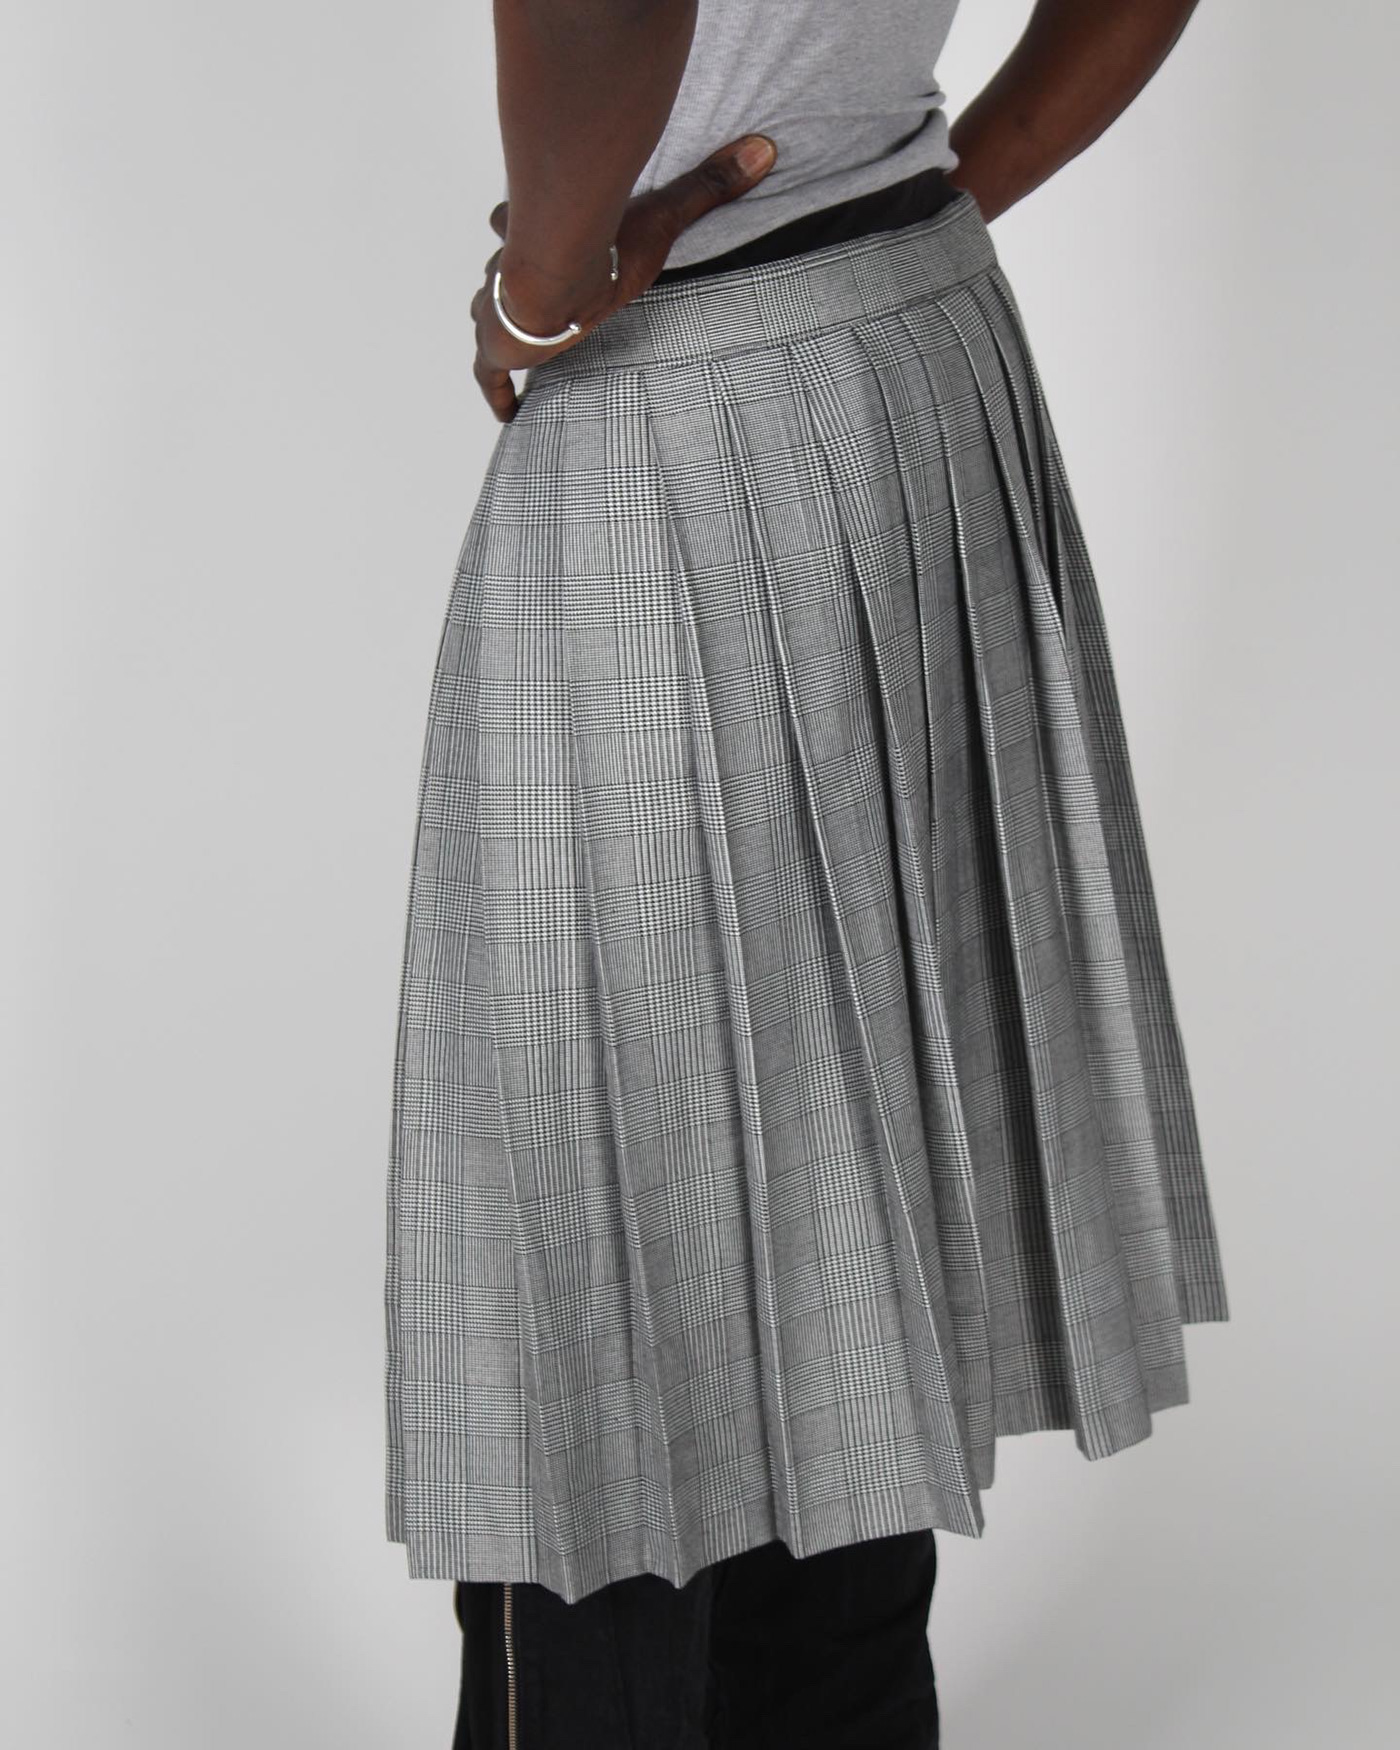 skirt kilt fashion design